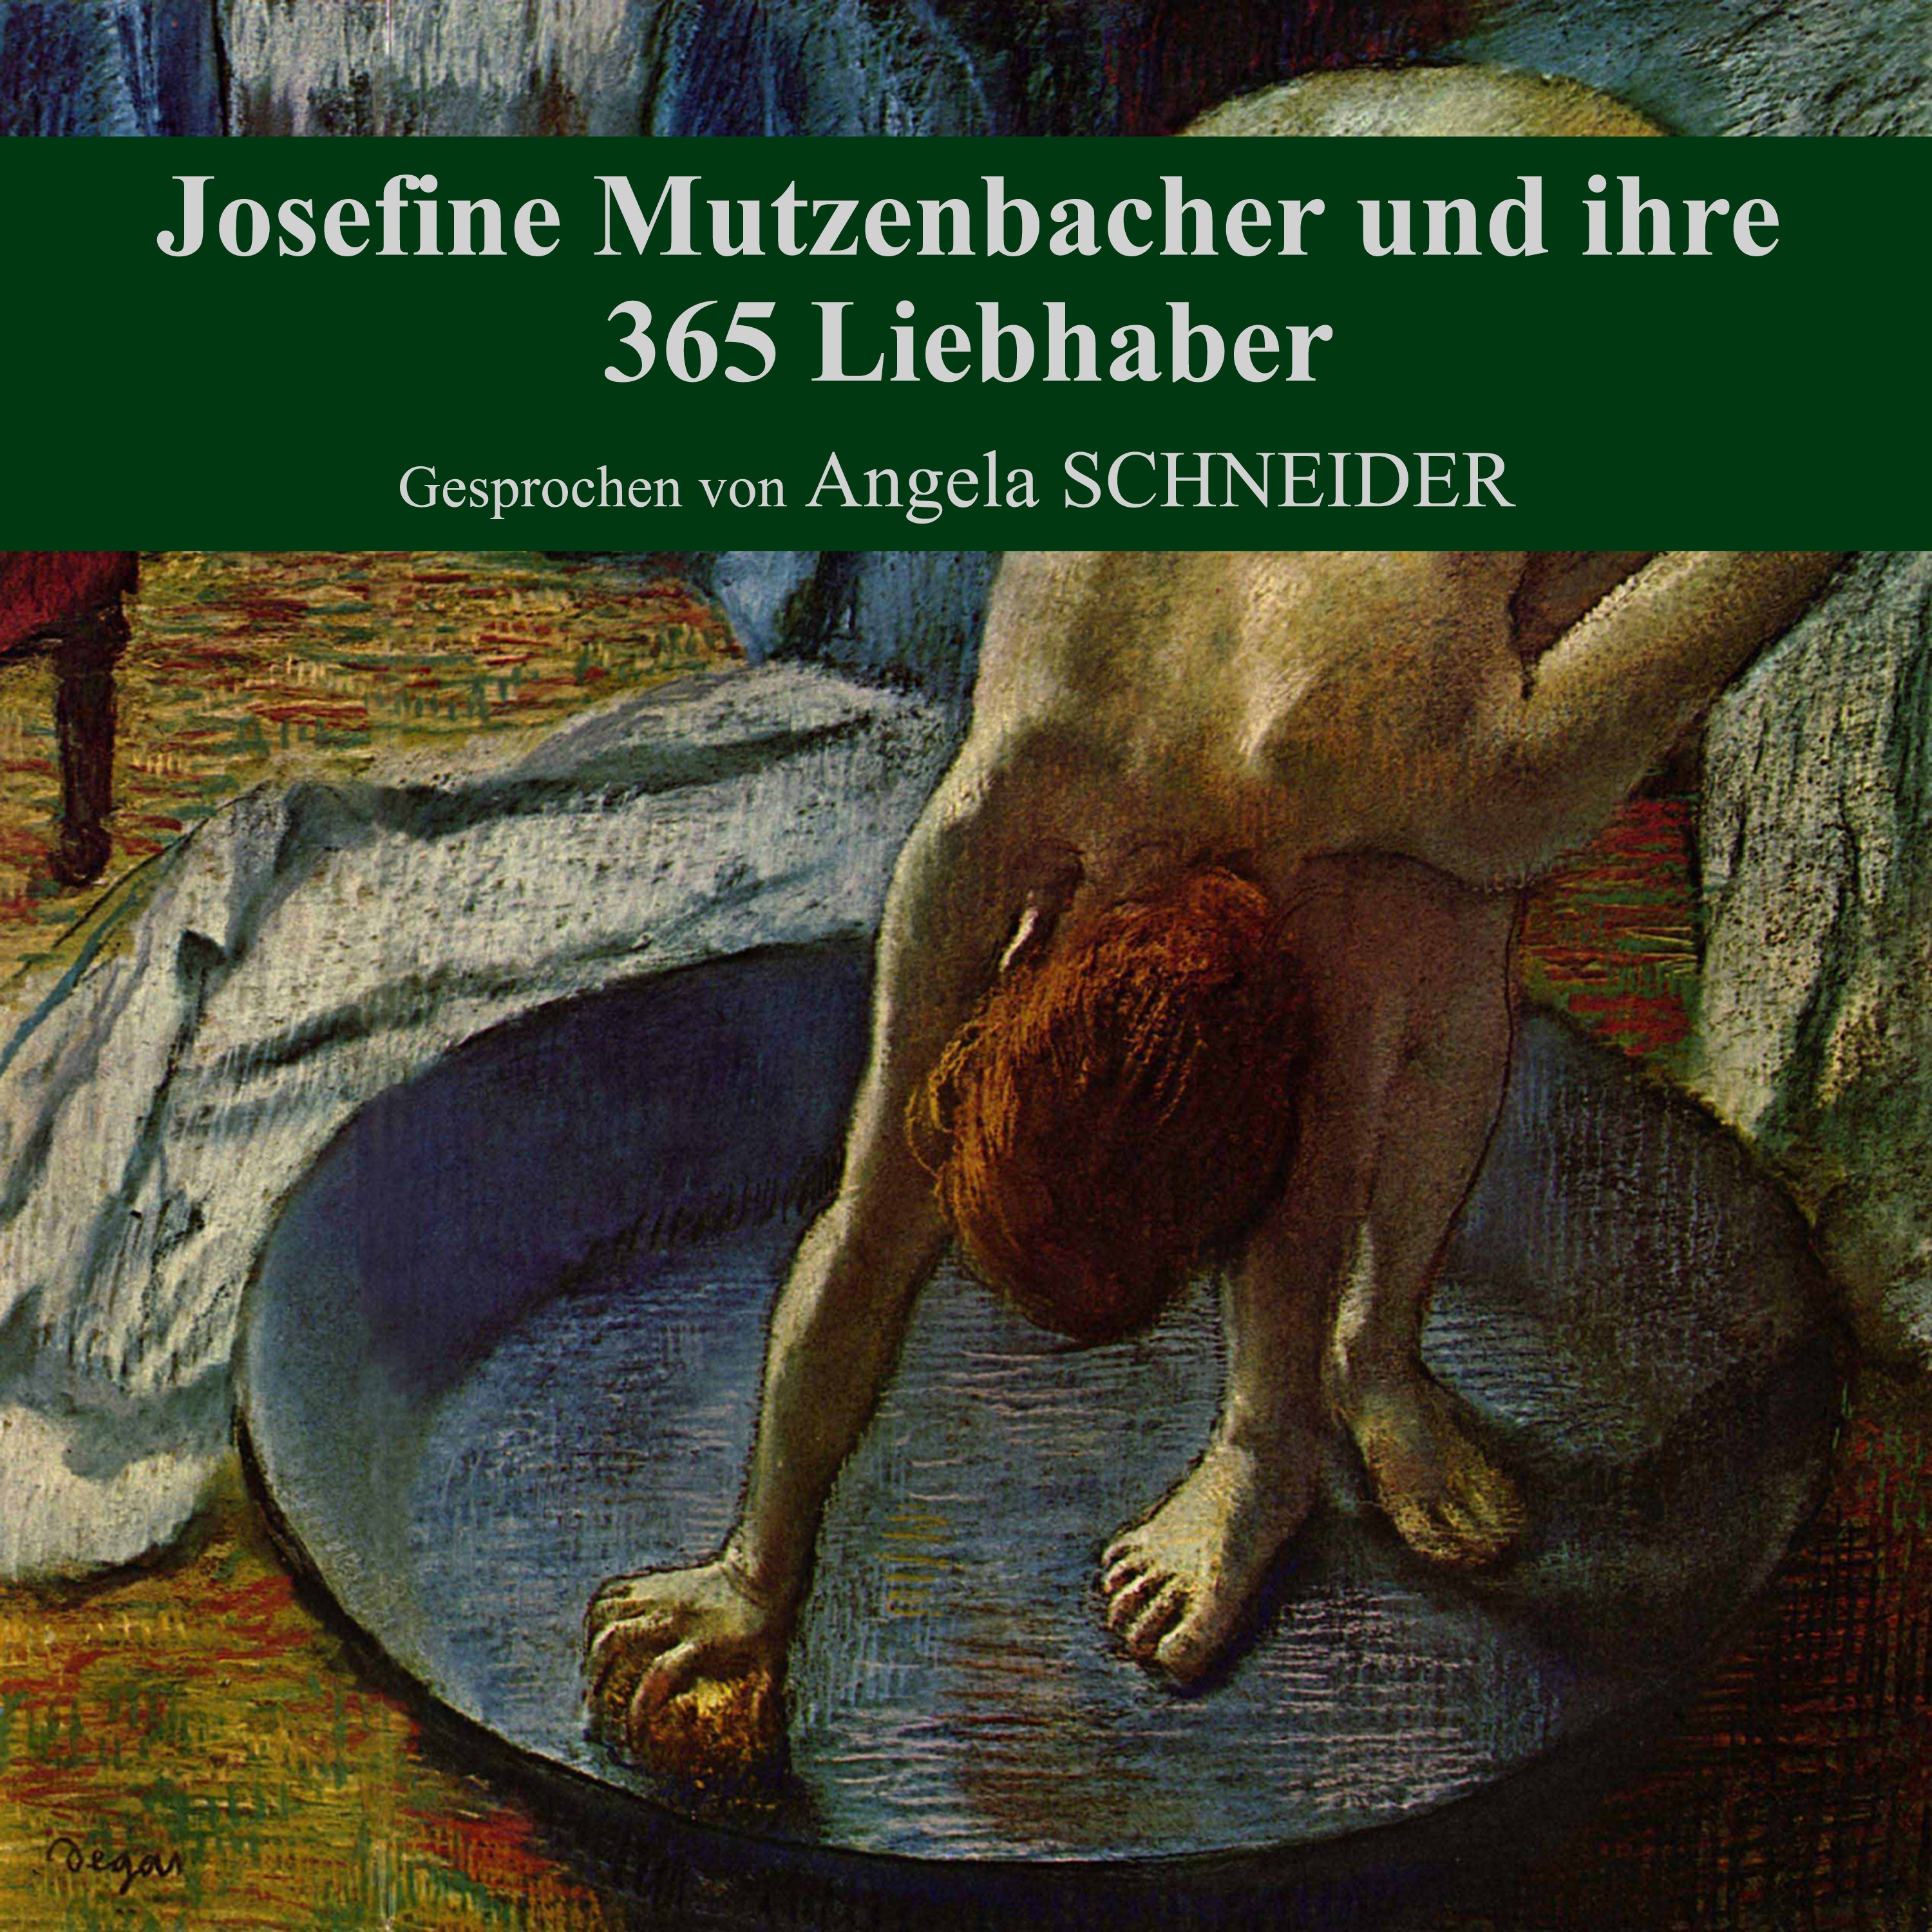 Teil 181: Josefine Mutzenbacher und ihre 365 Liebhaber